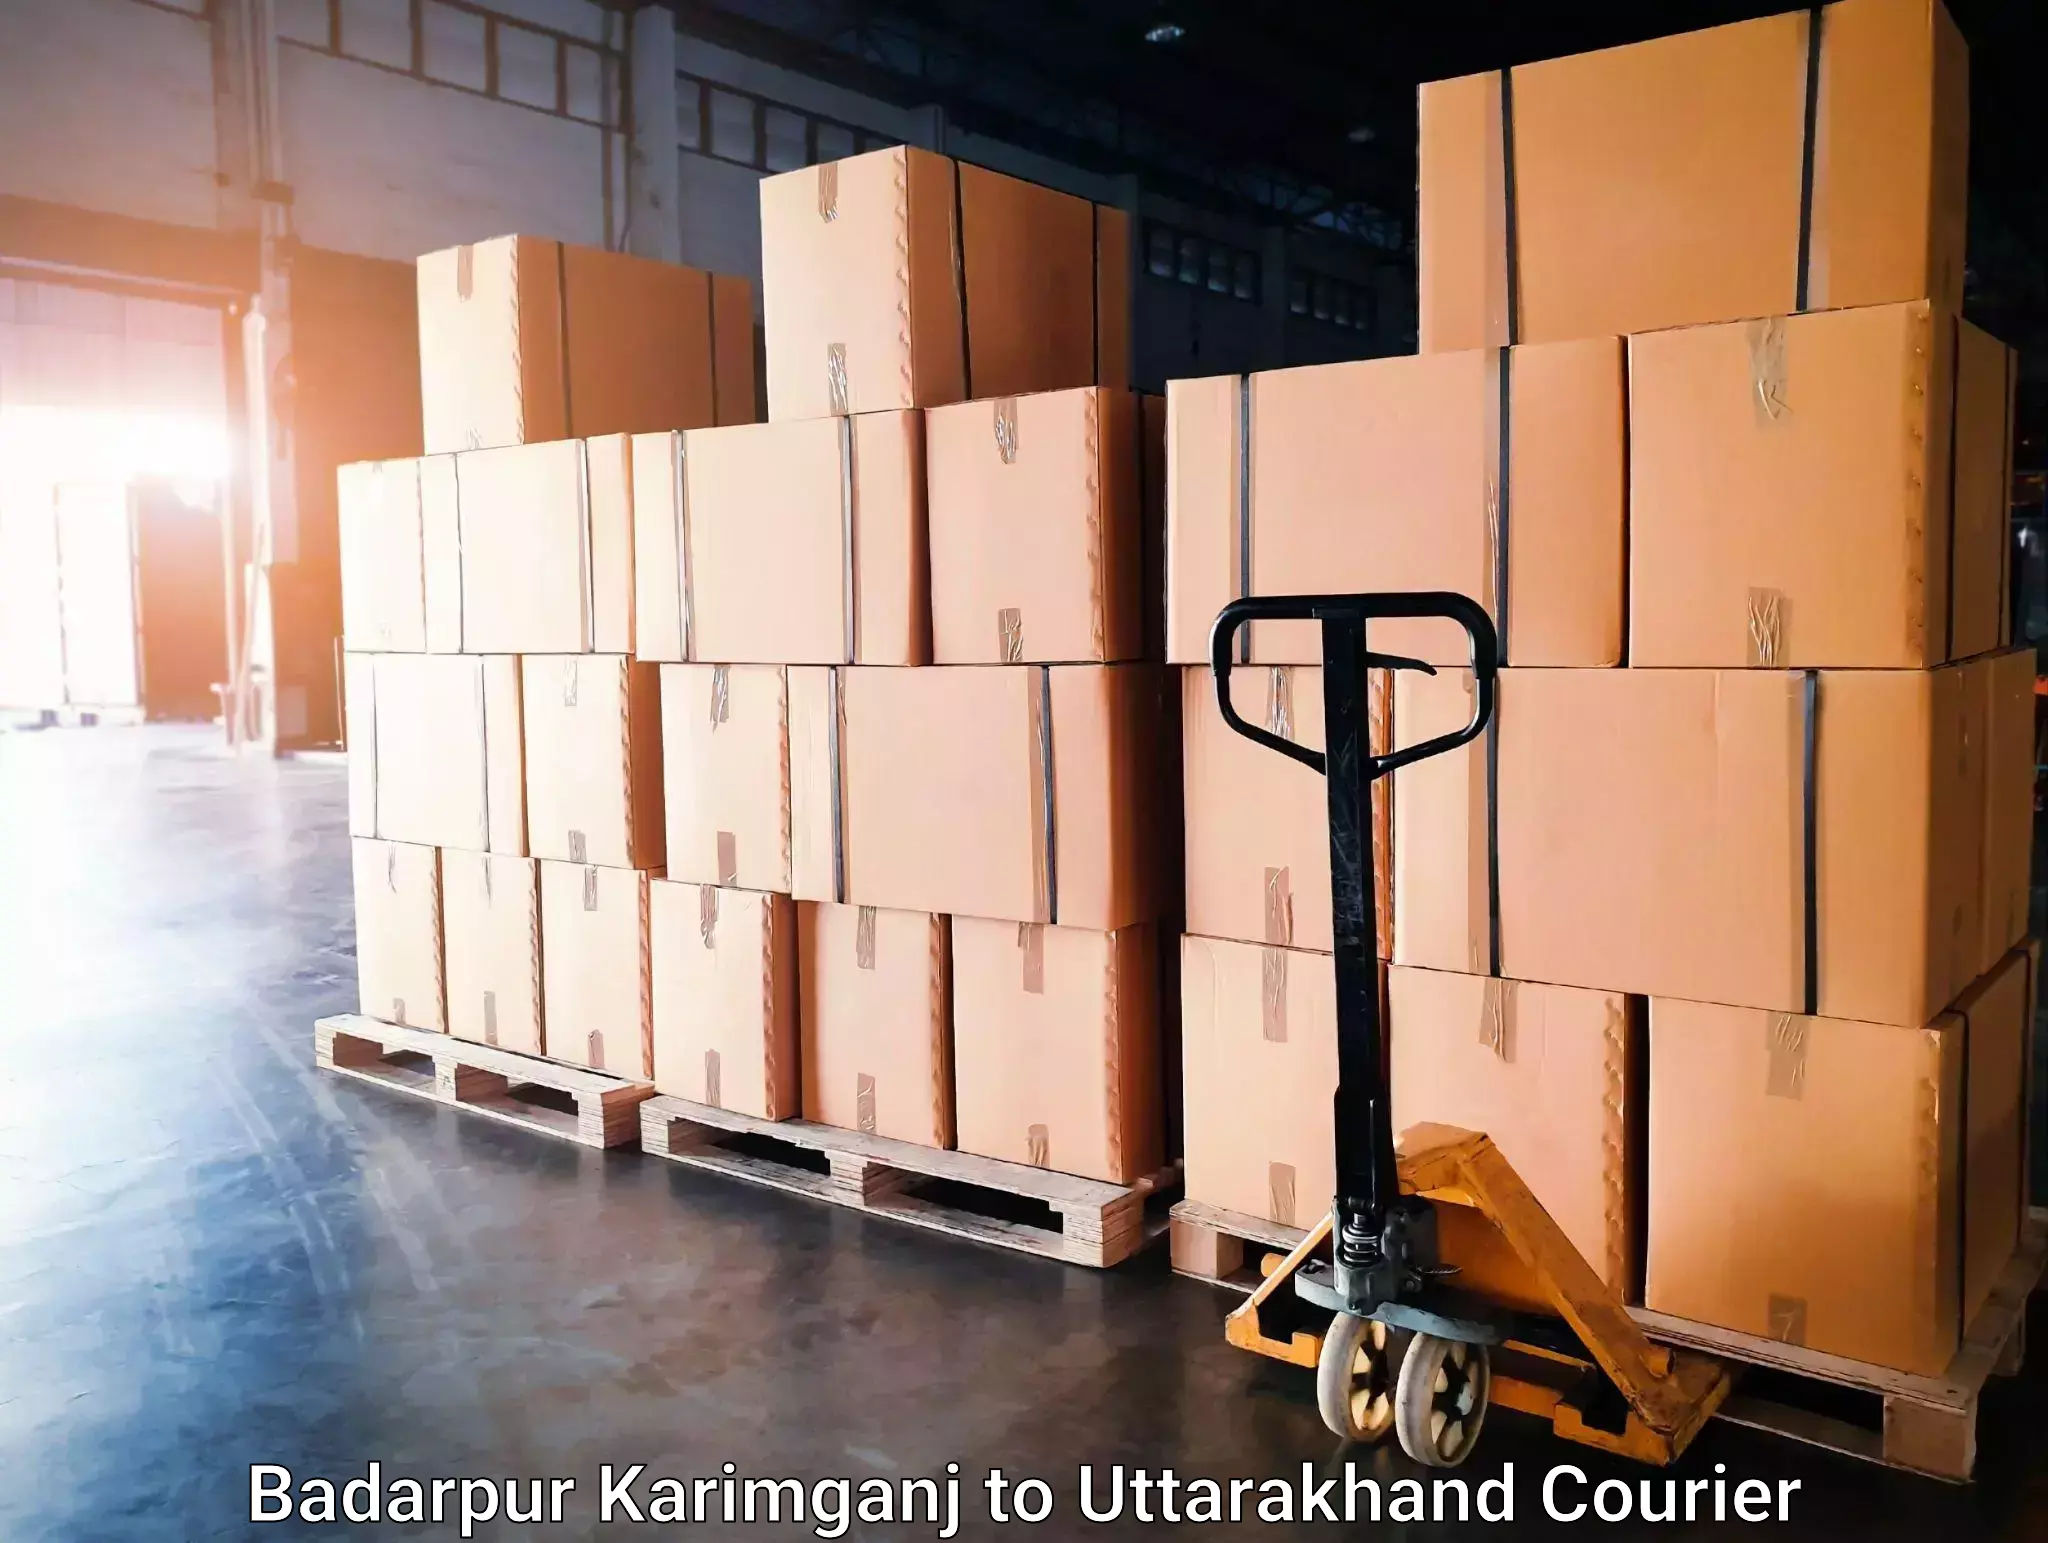 Same-day delivery solutions Badarpur Karimganj to Dwarahat